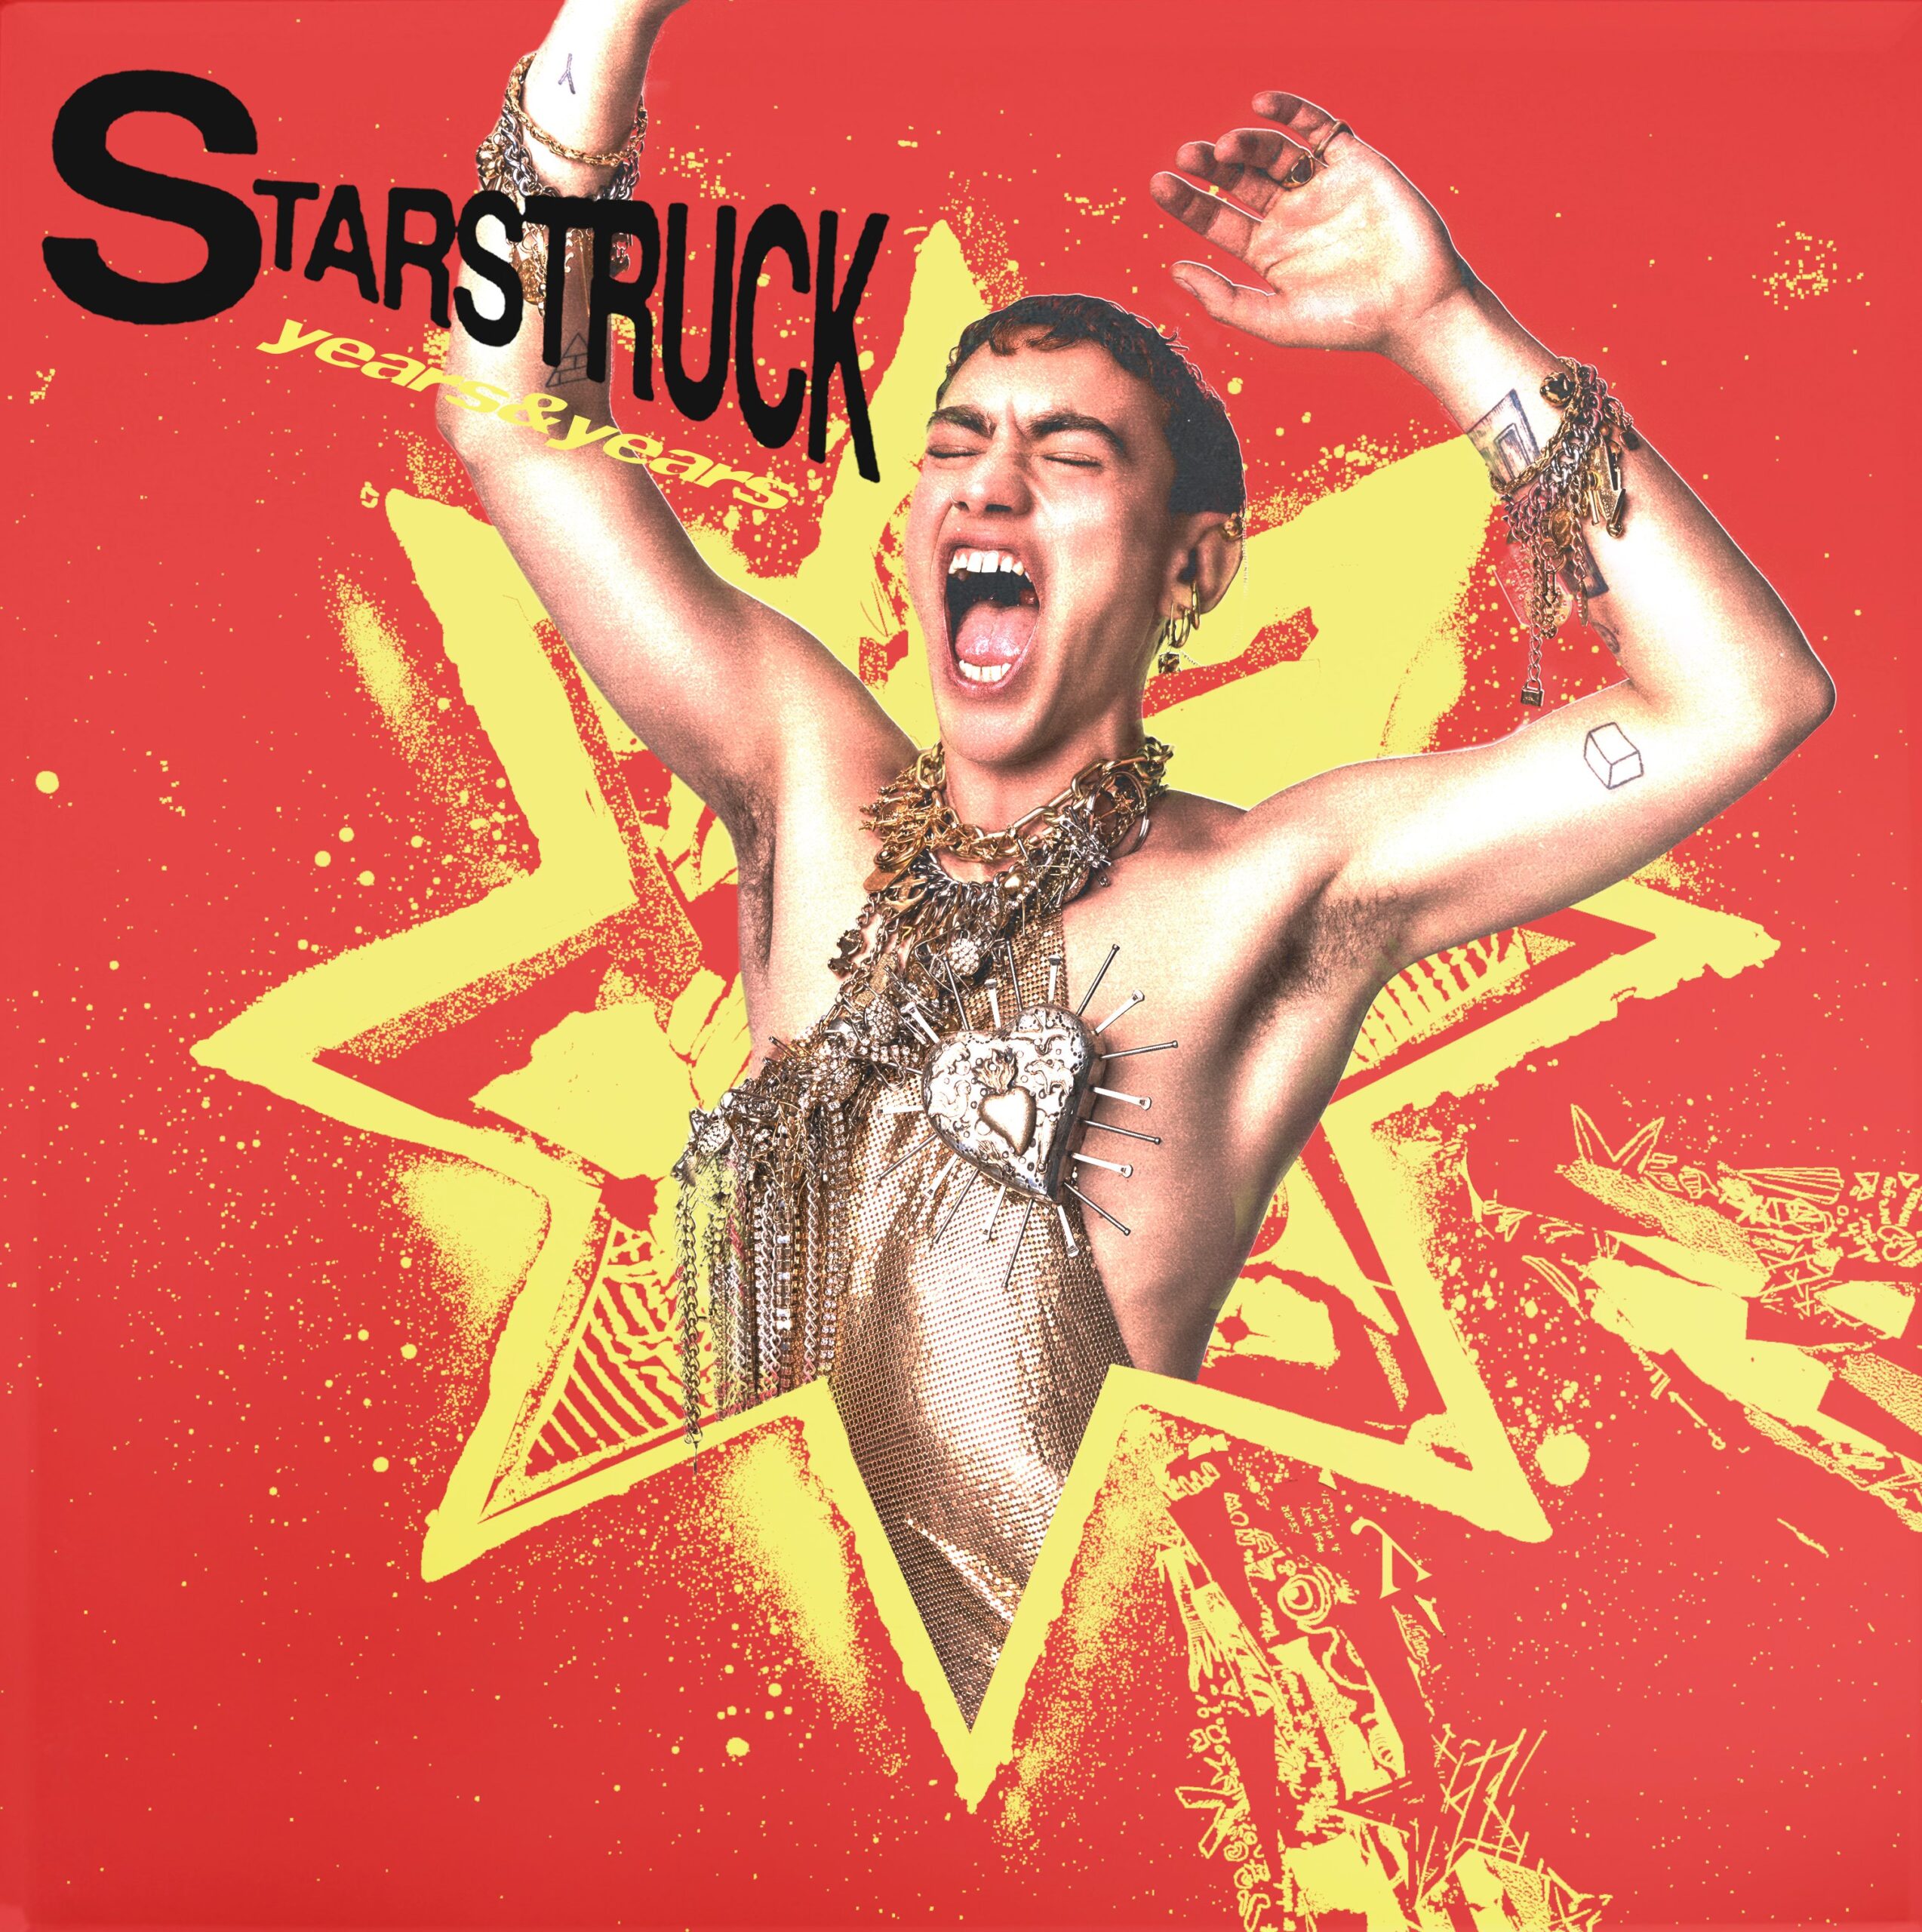 Starstruck - Years and Years